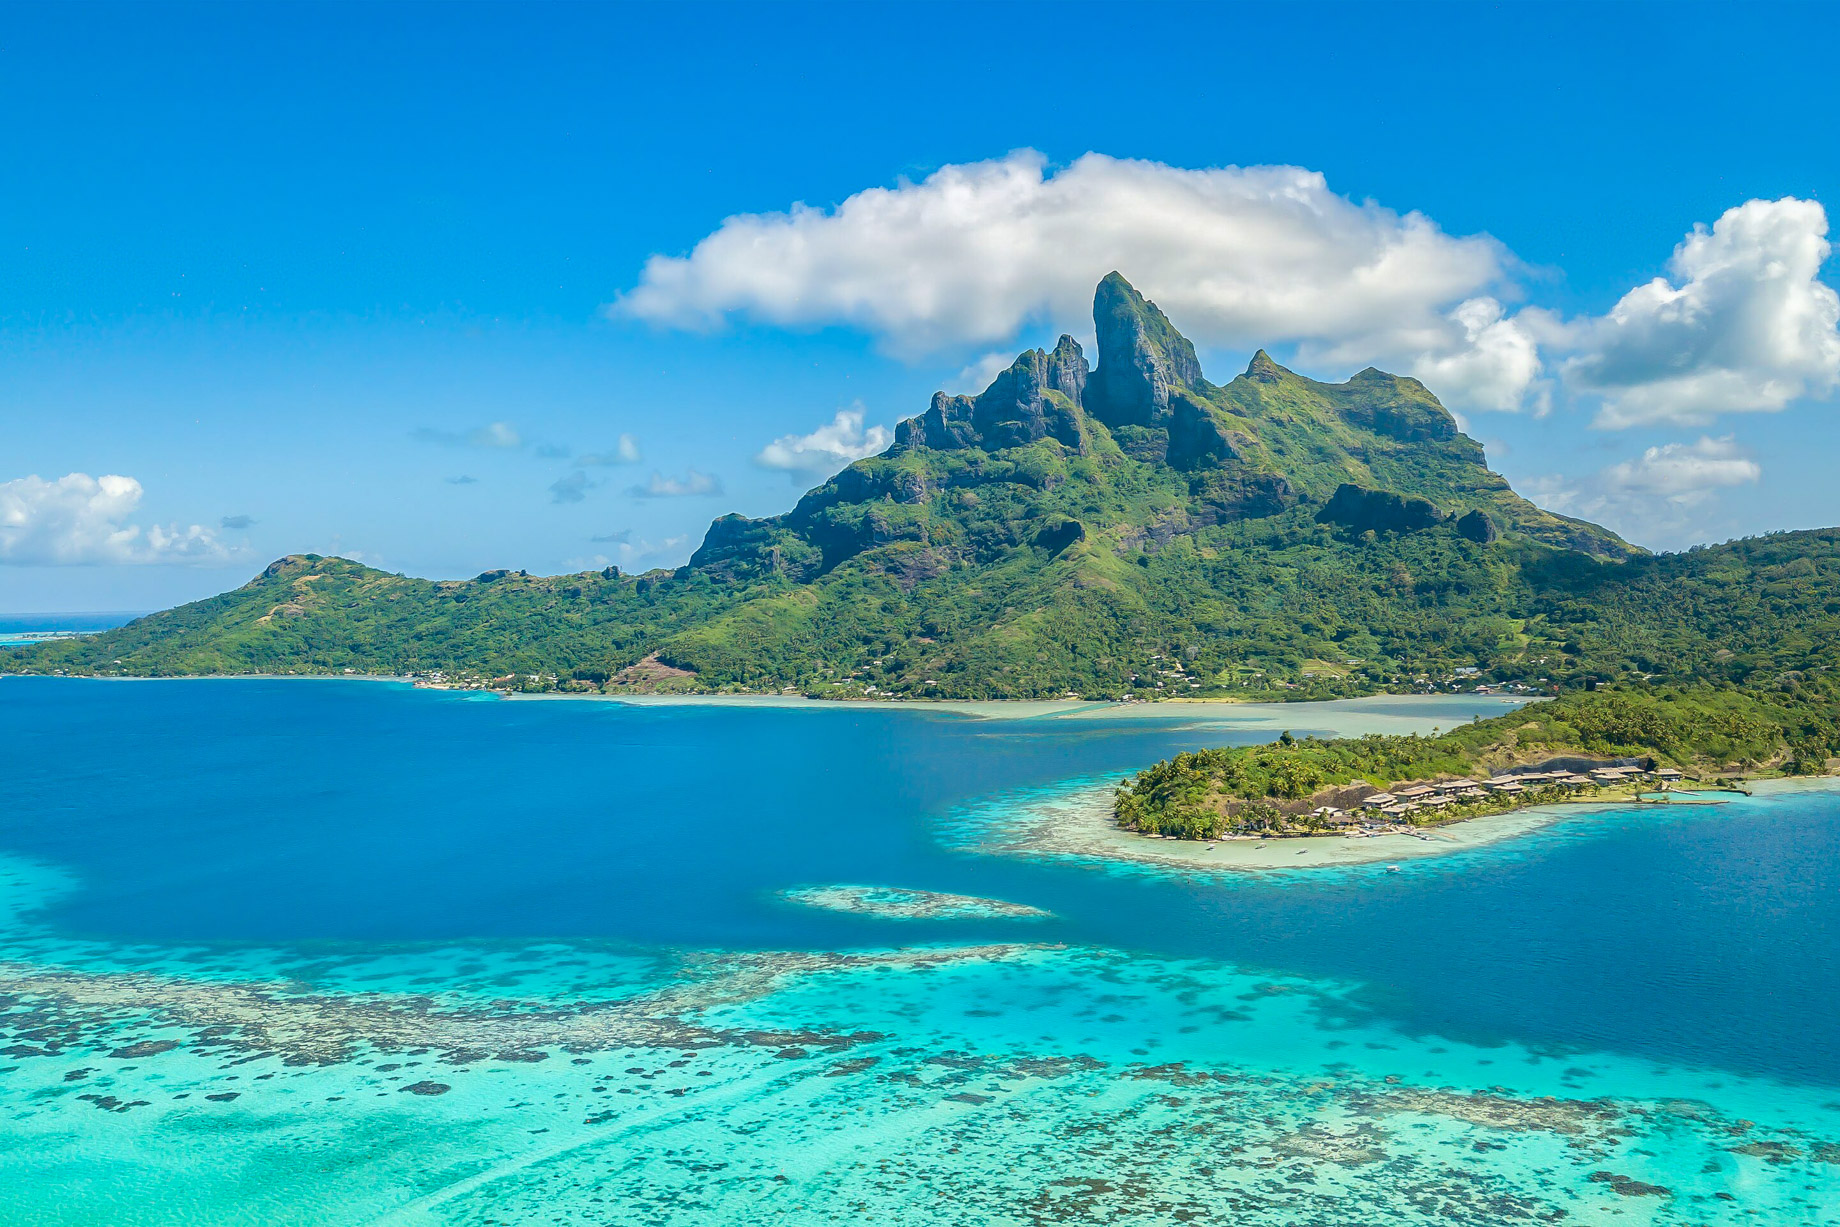 The St. Regis Bora Bora Resort – Bora Bora, French Polynesia – Bora Bora Mountain View